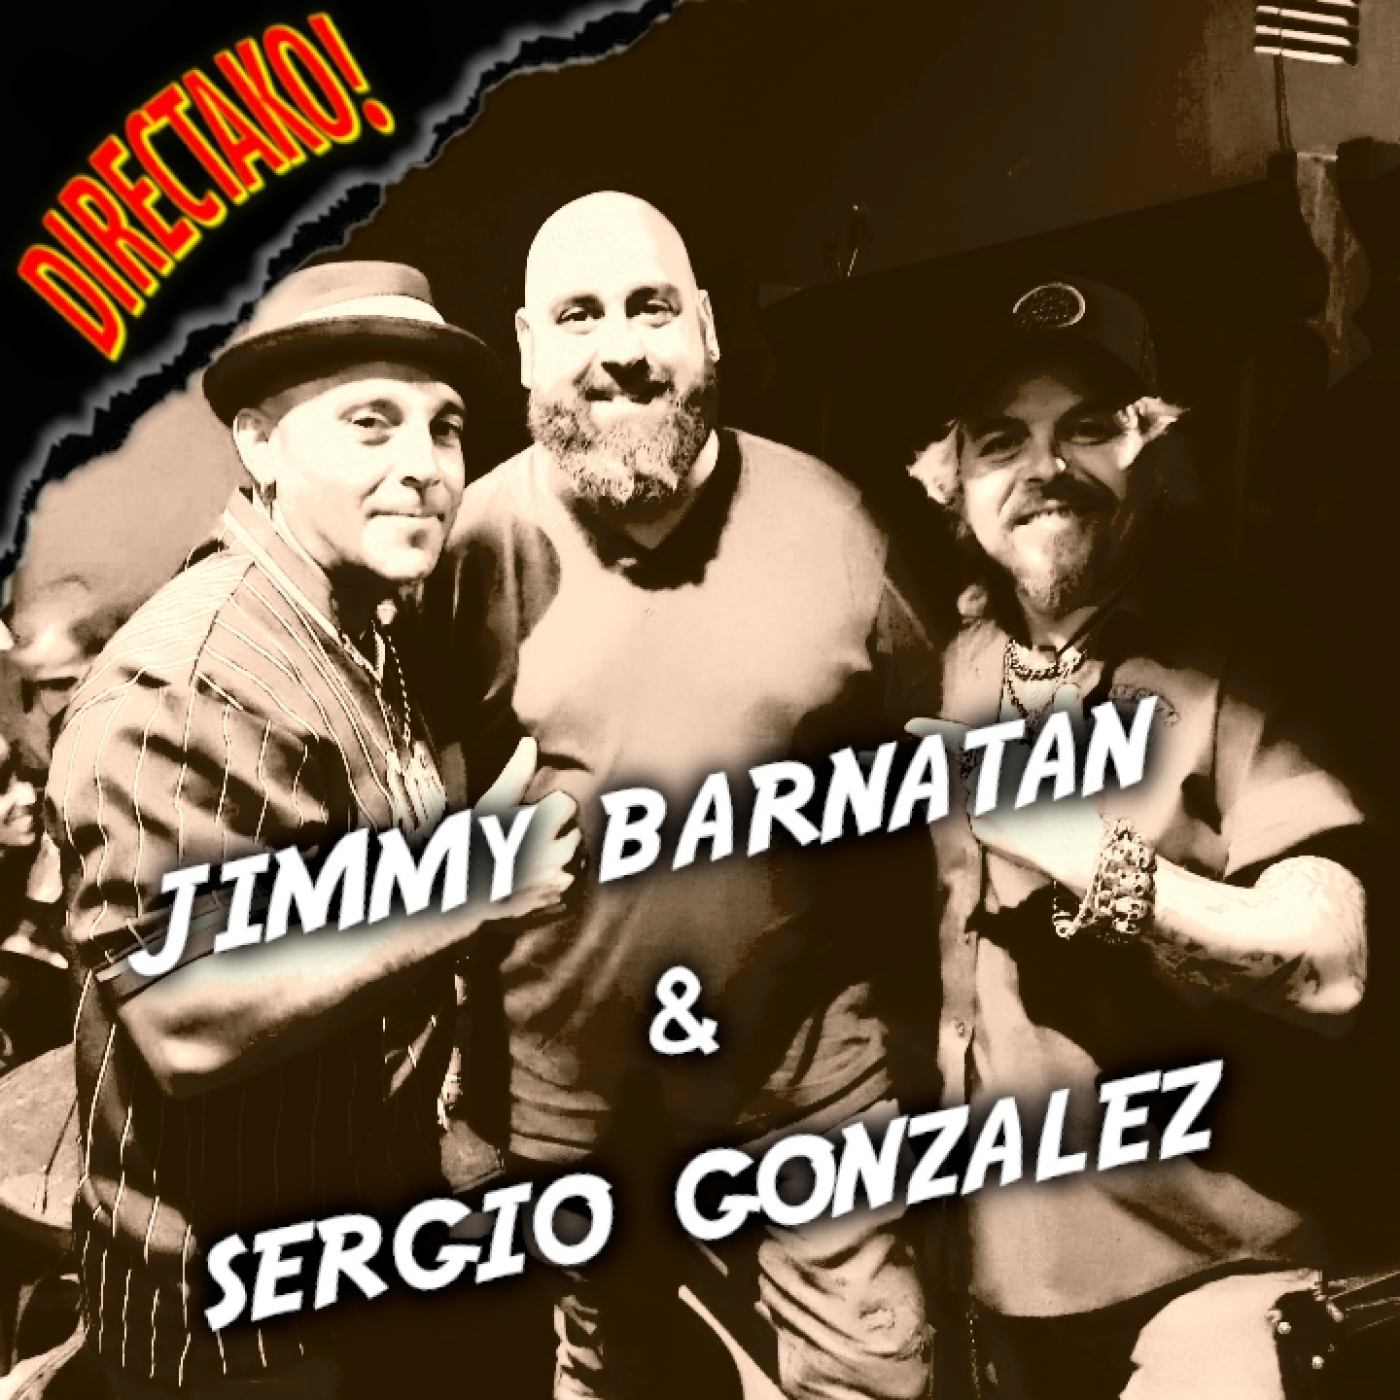 154 - Jimmy Barnatán & Sergio Gonzalez